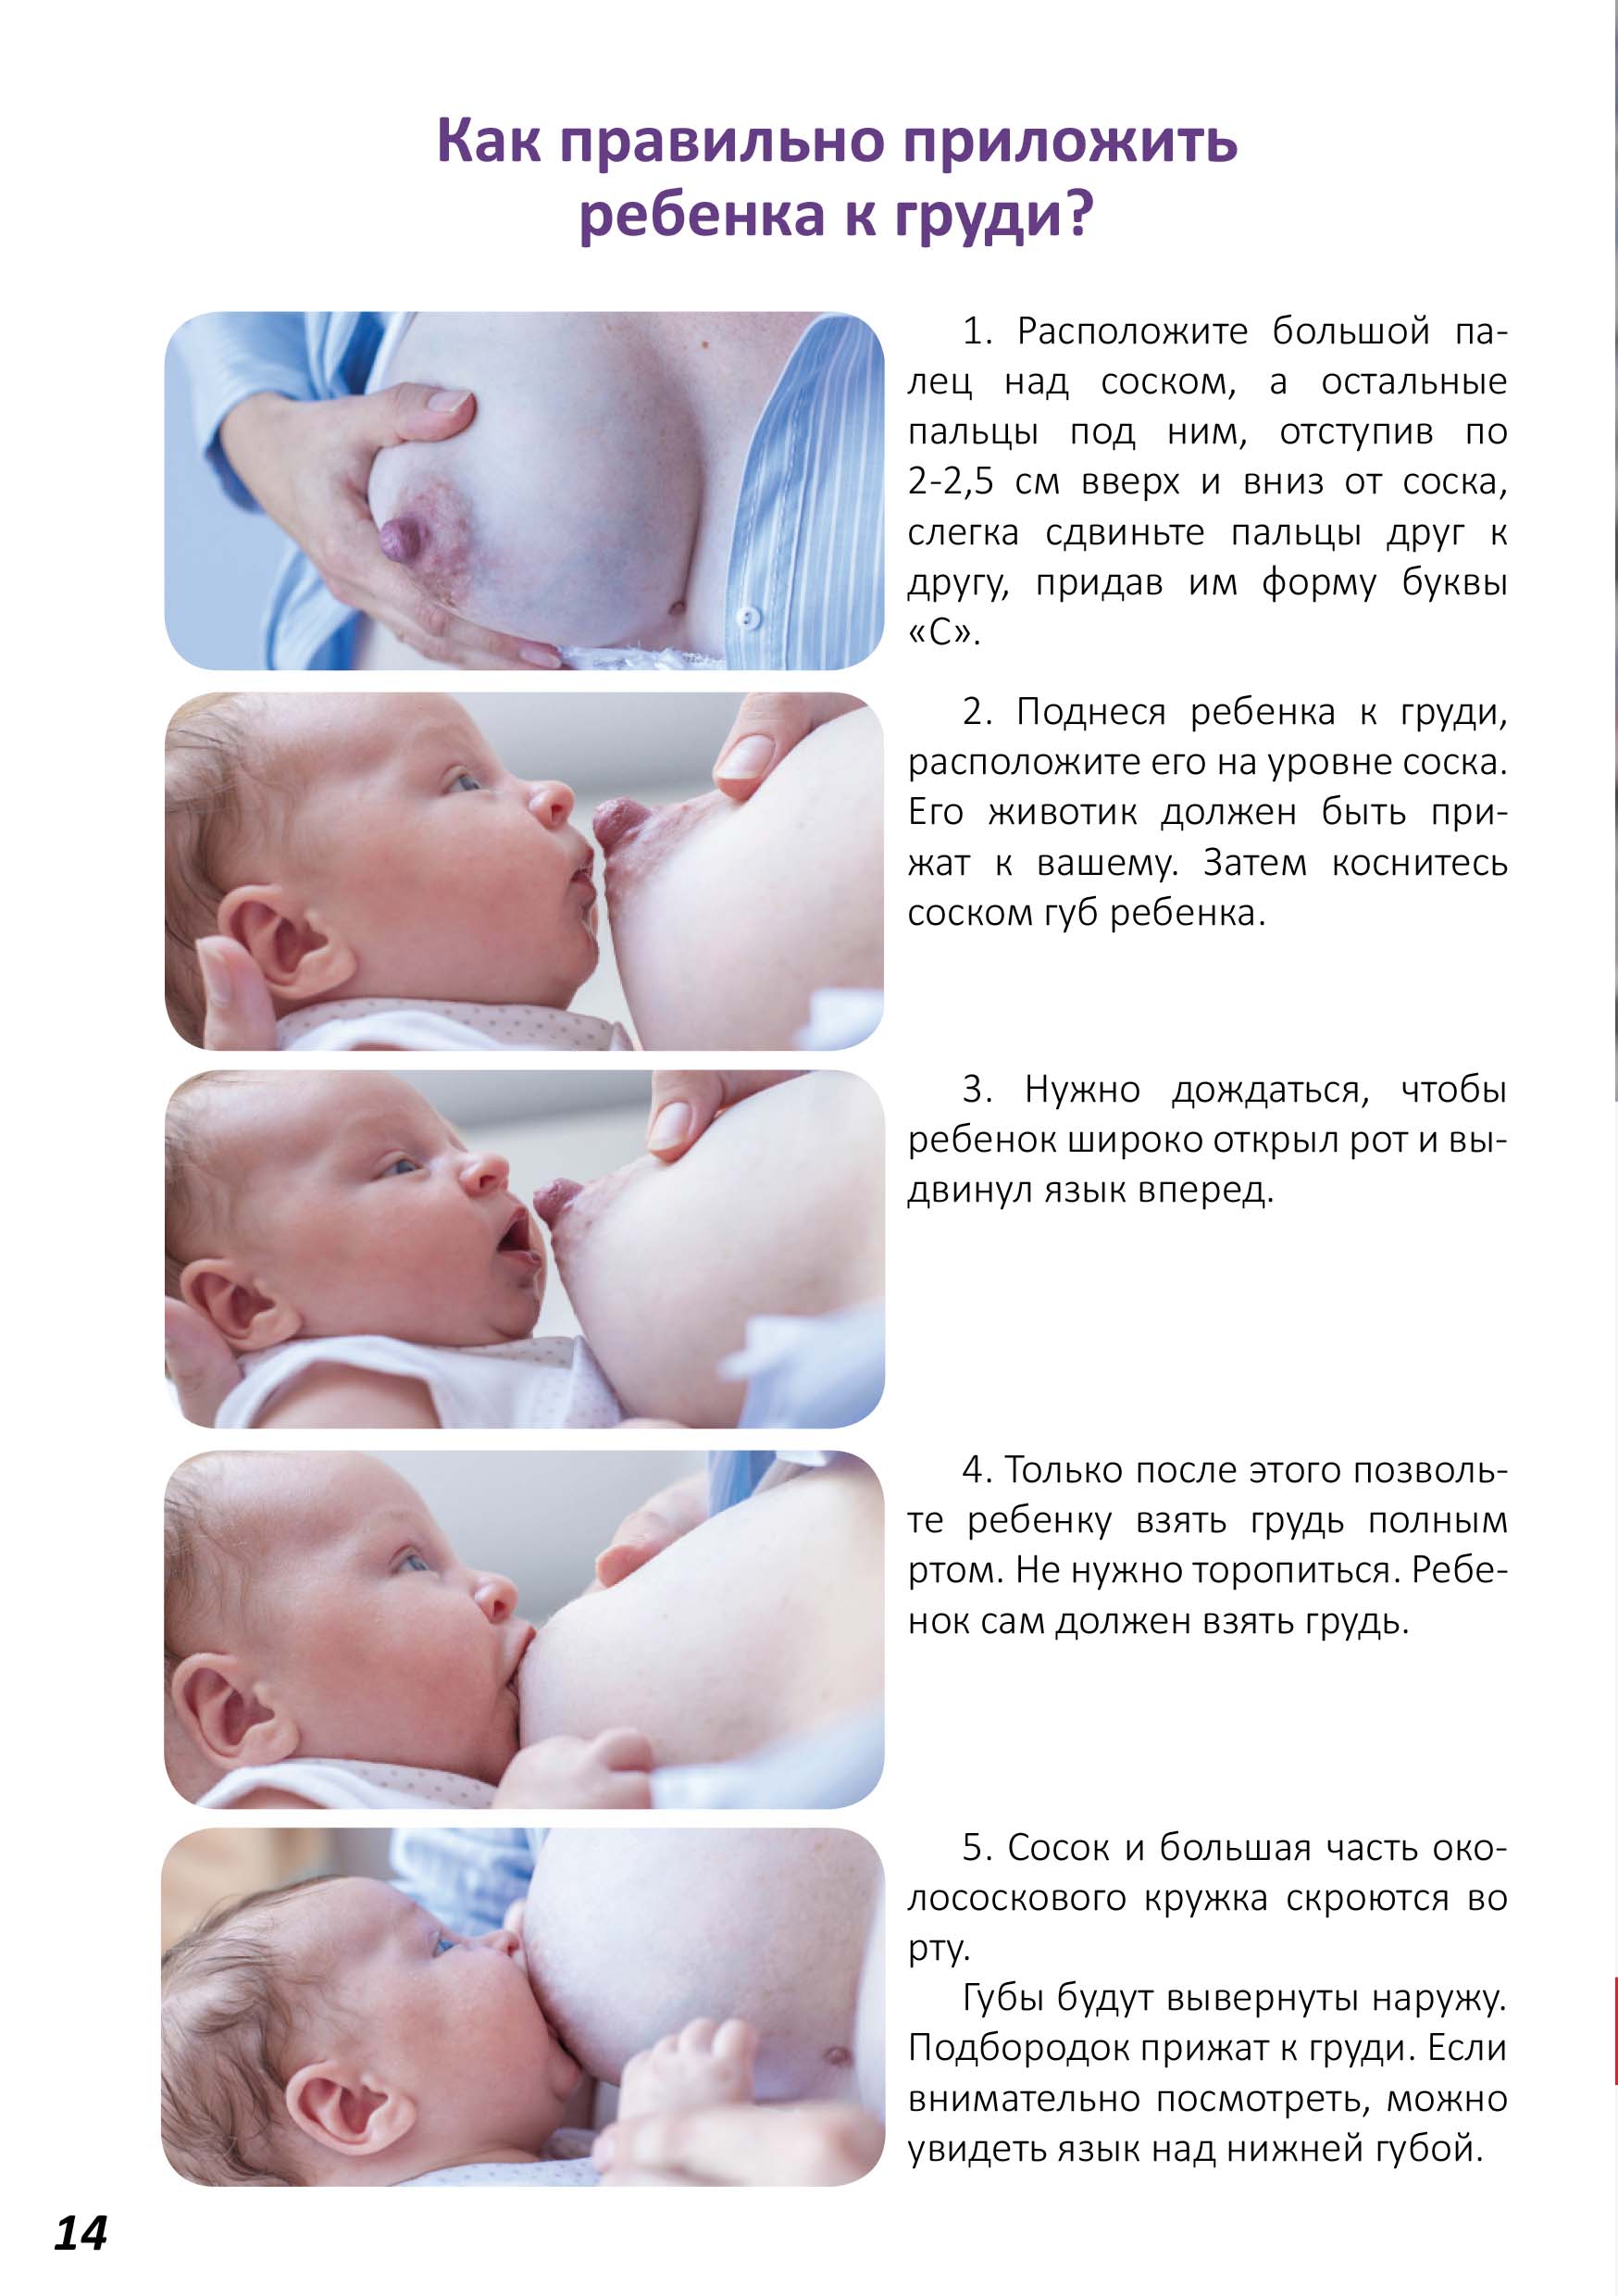 Новорожденный давится при кормлении грудным молоком